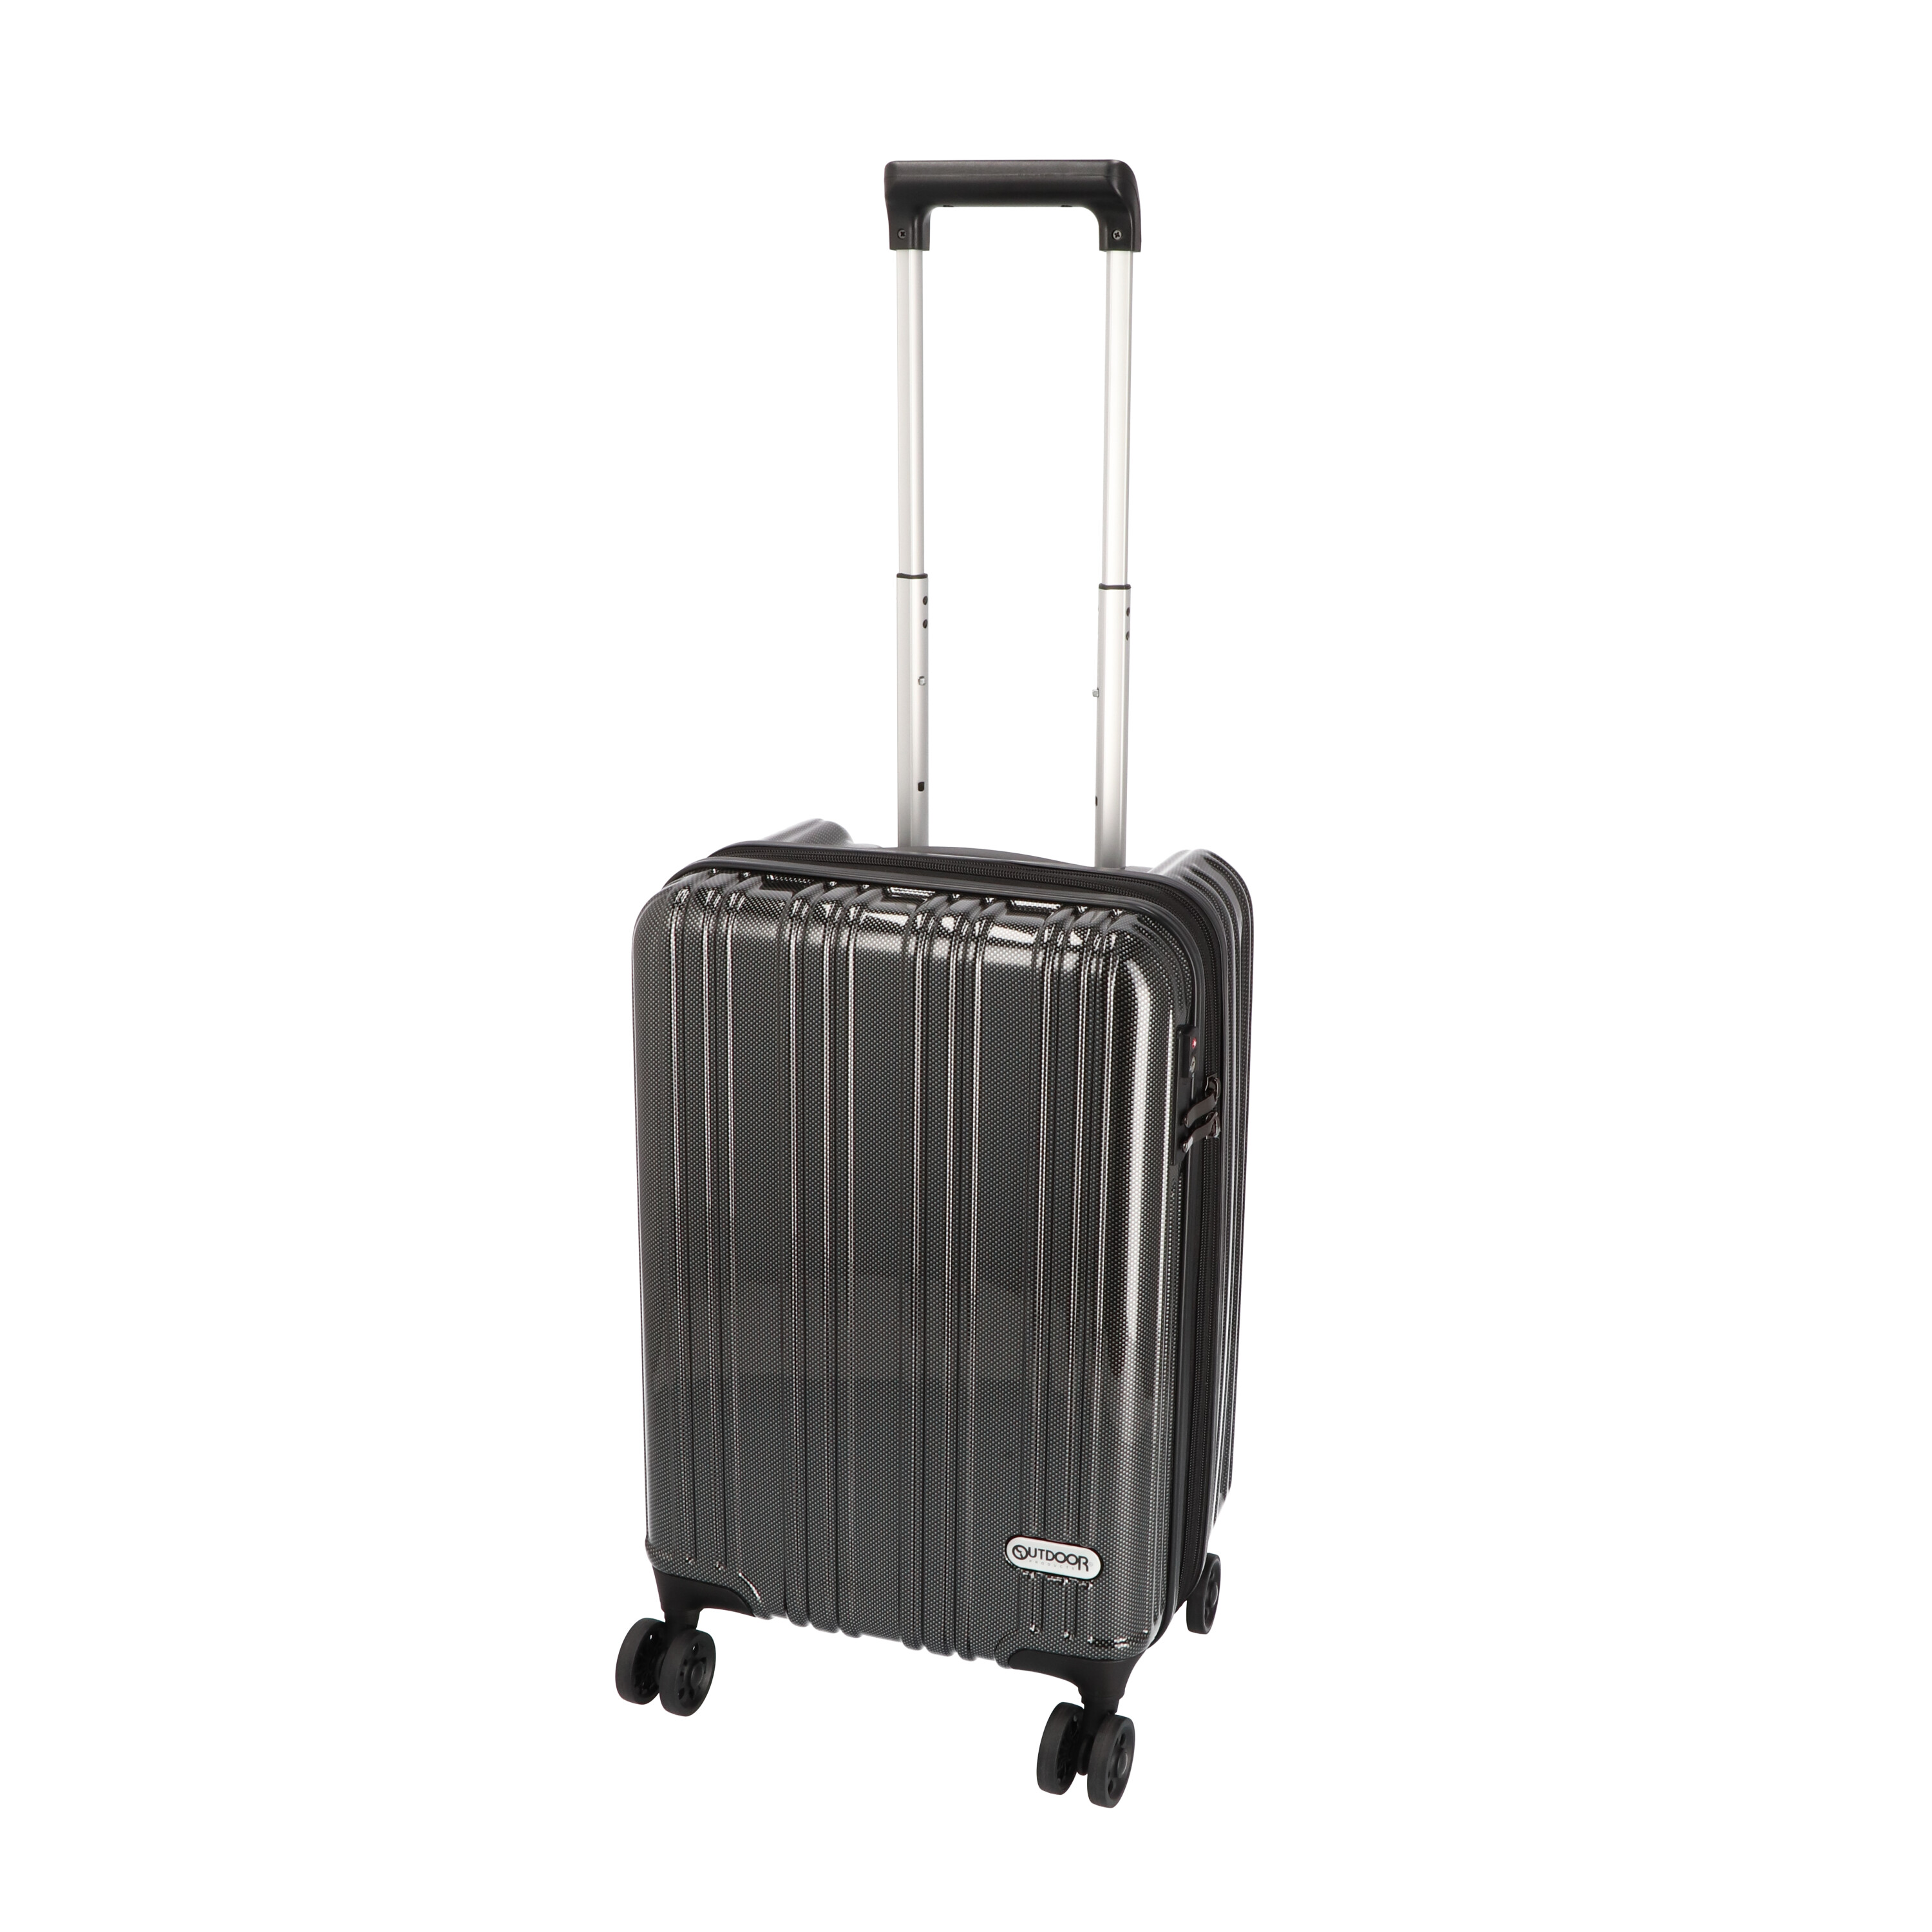 スーツケース・キャリーバッグのおすすめ人気ランキング92選【徹底比較】 | マイベスト